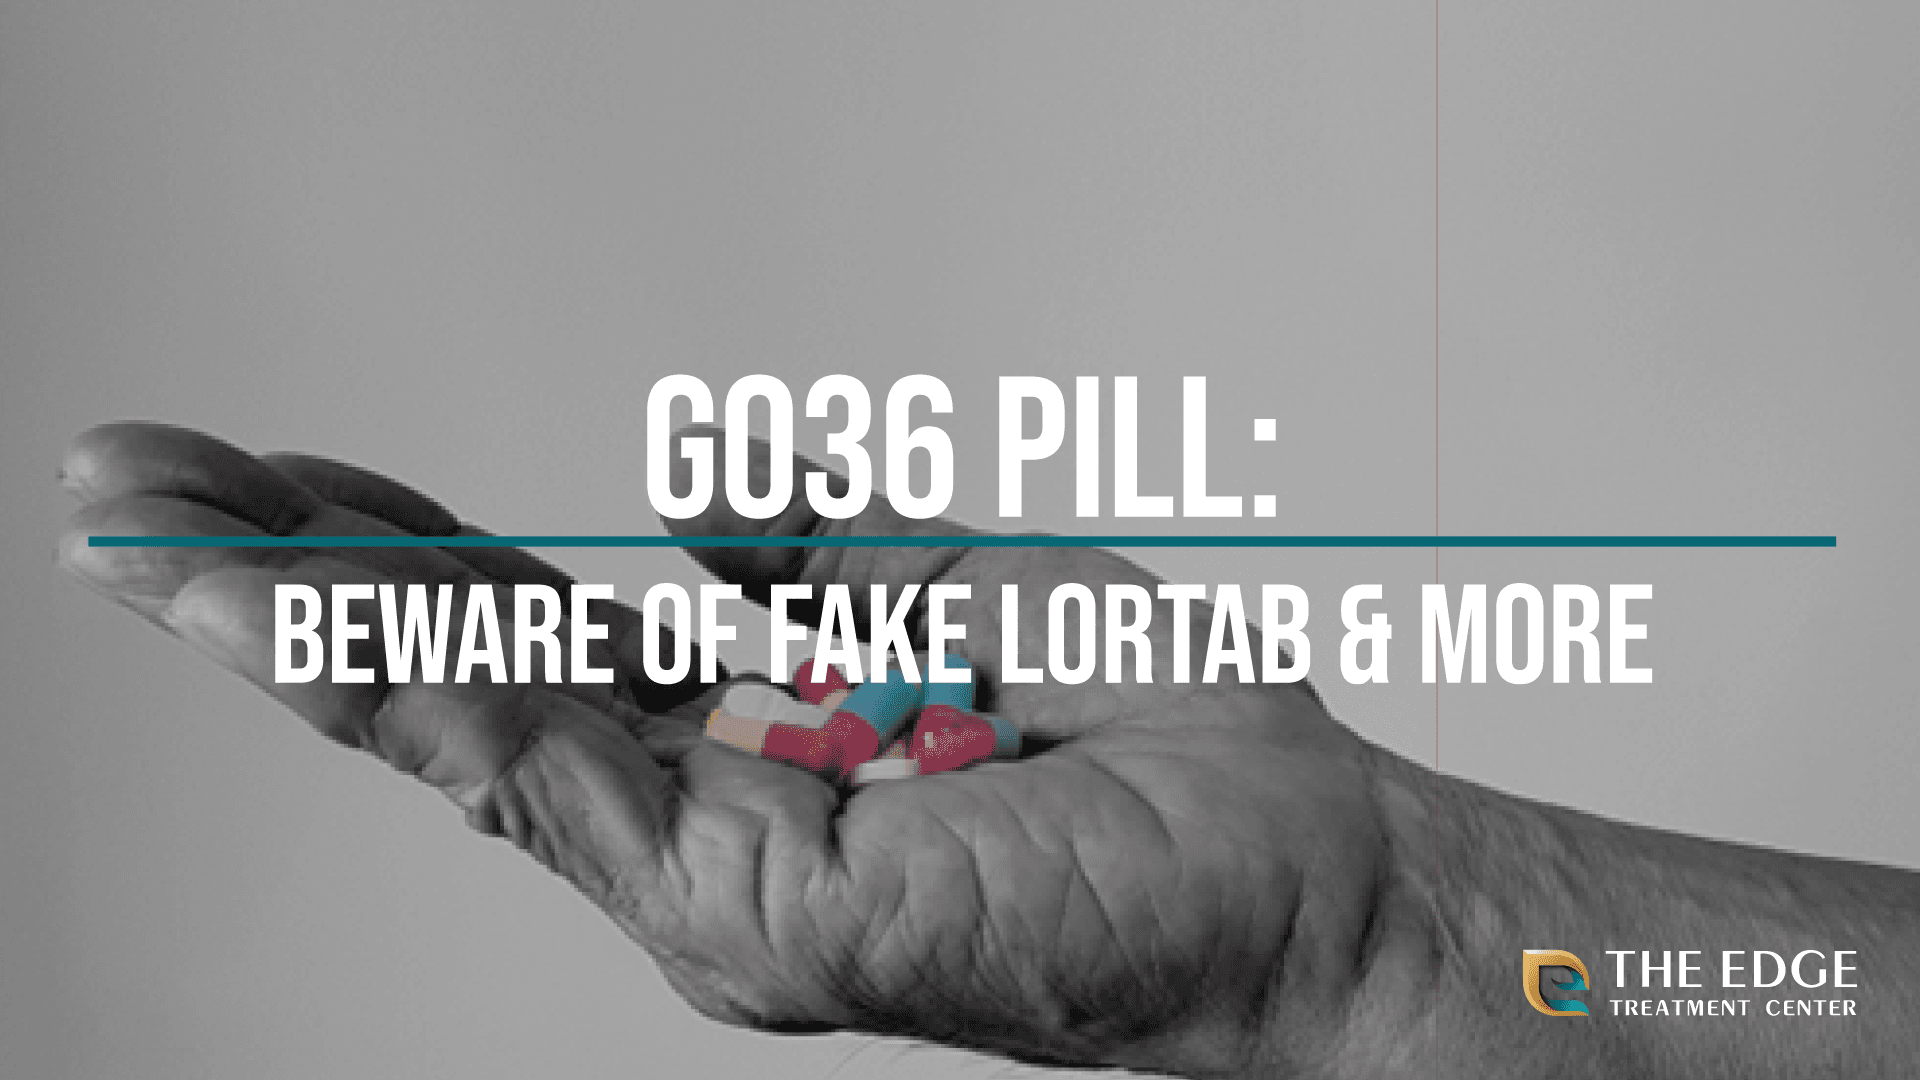 What is Fake Lortab?